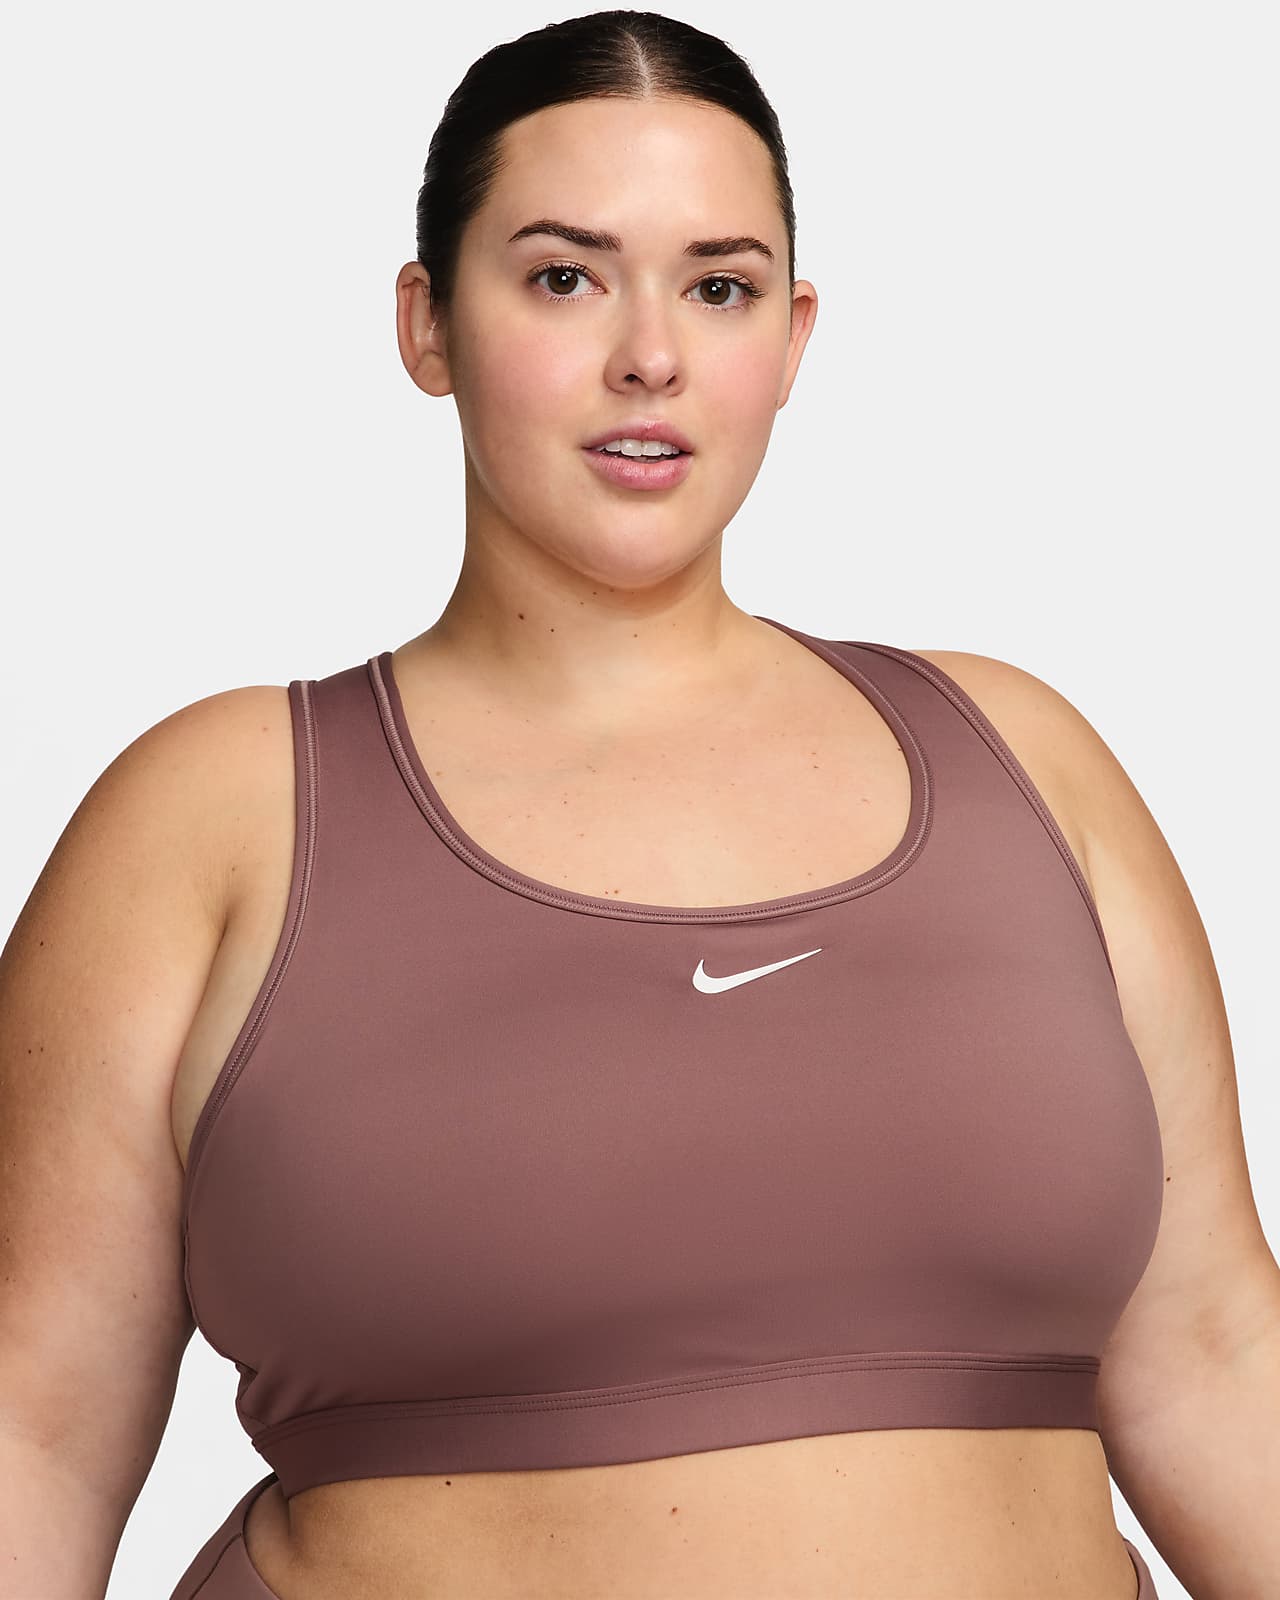 สปอร์ตบราผู้หญิงเสริมฟองน้ำ Nike Swoosh Medium Support (พลัสไซส์)